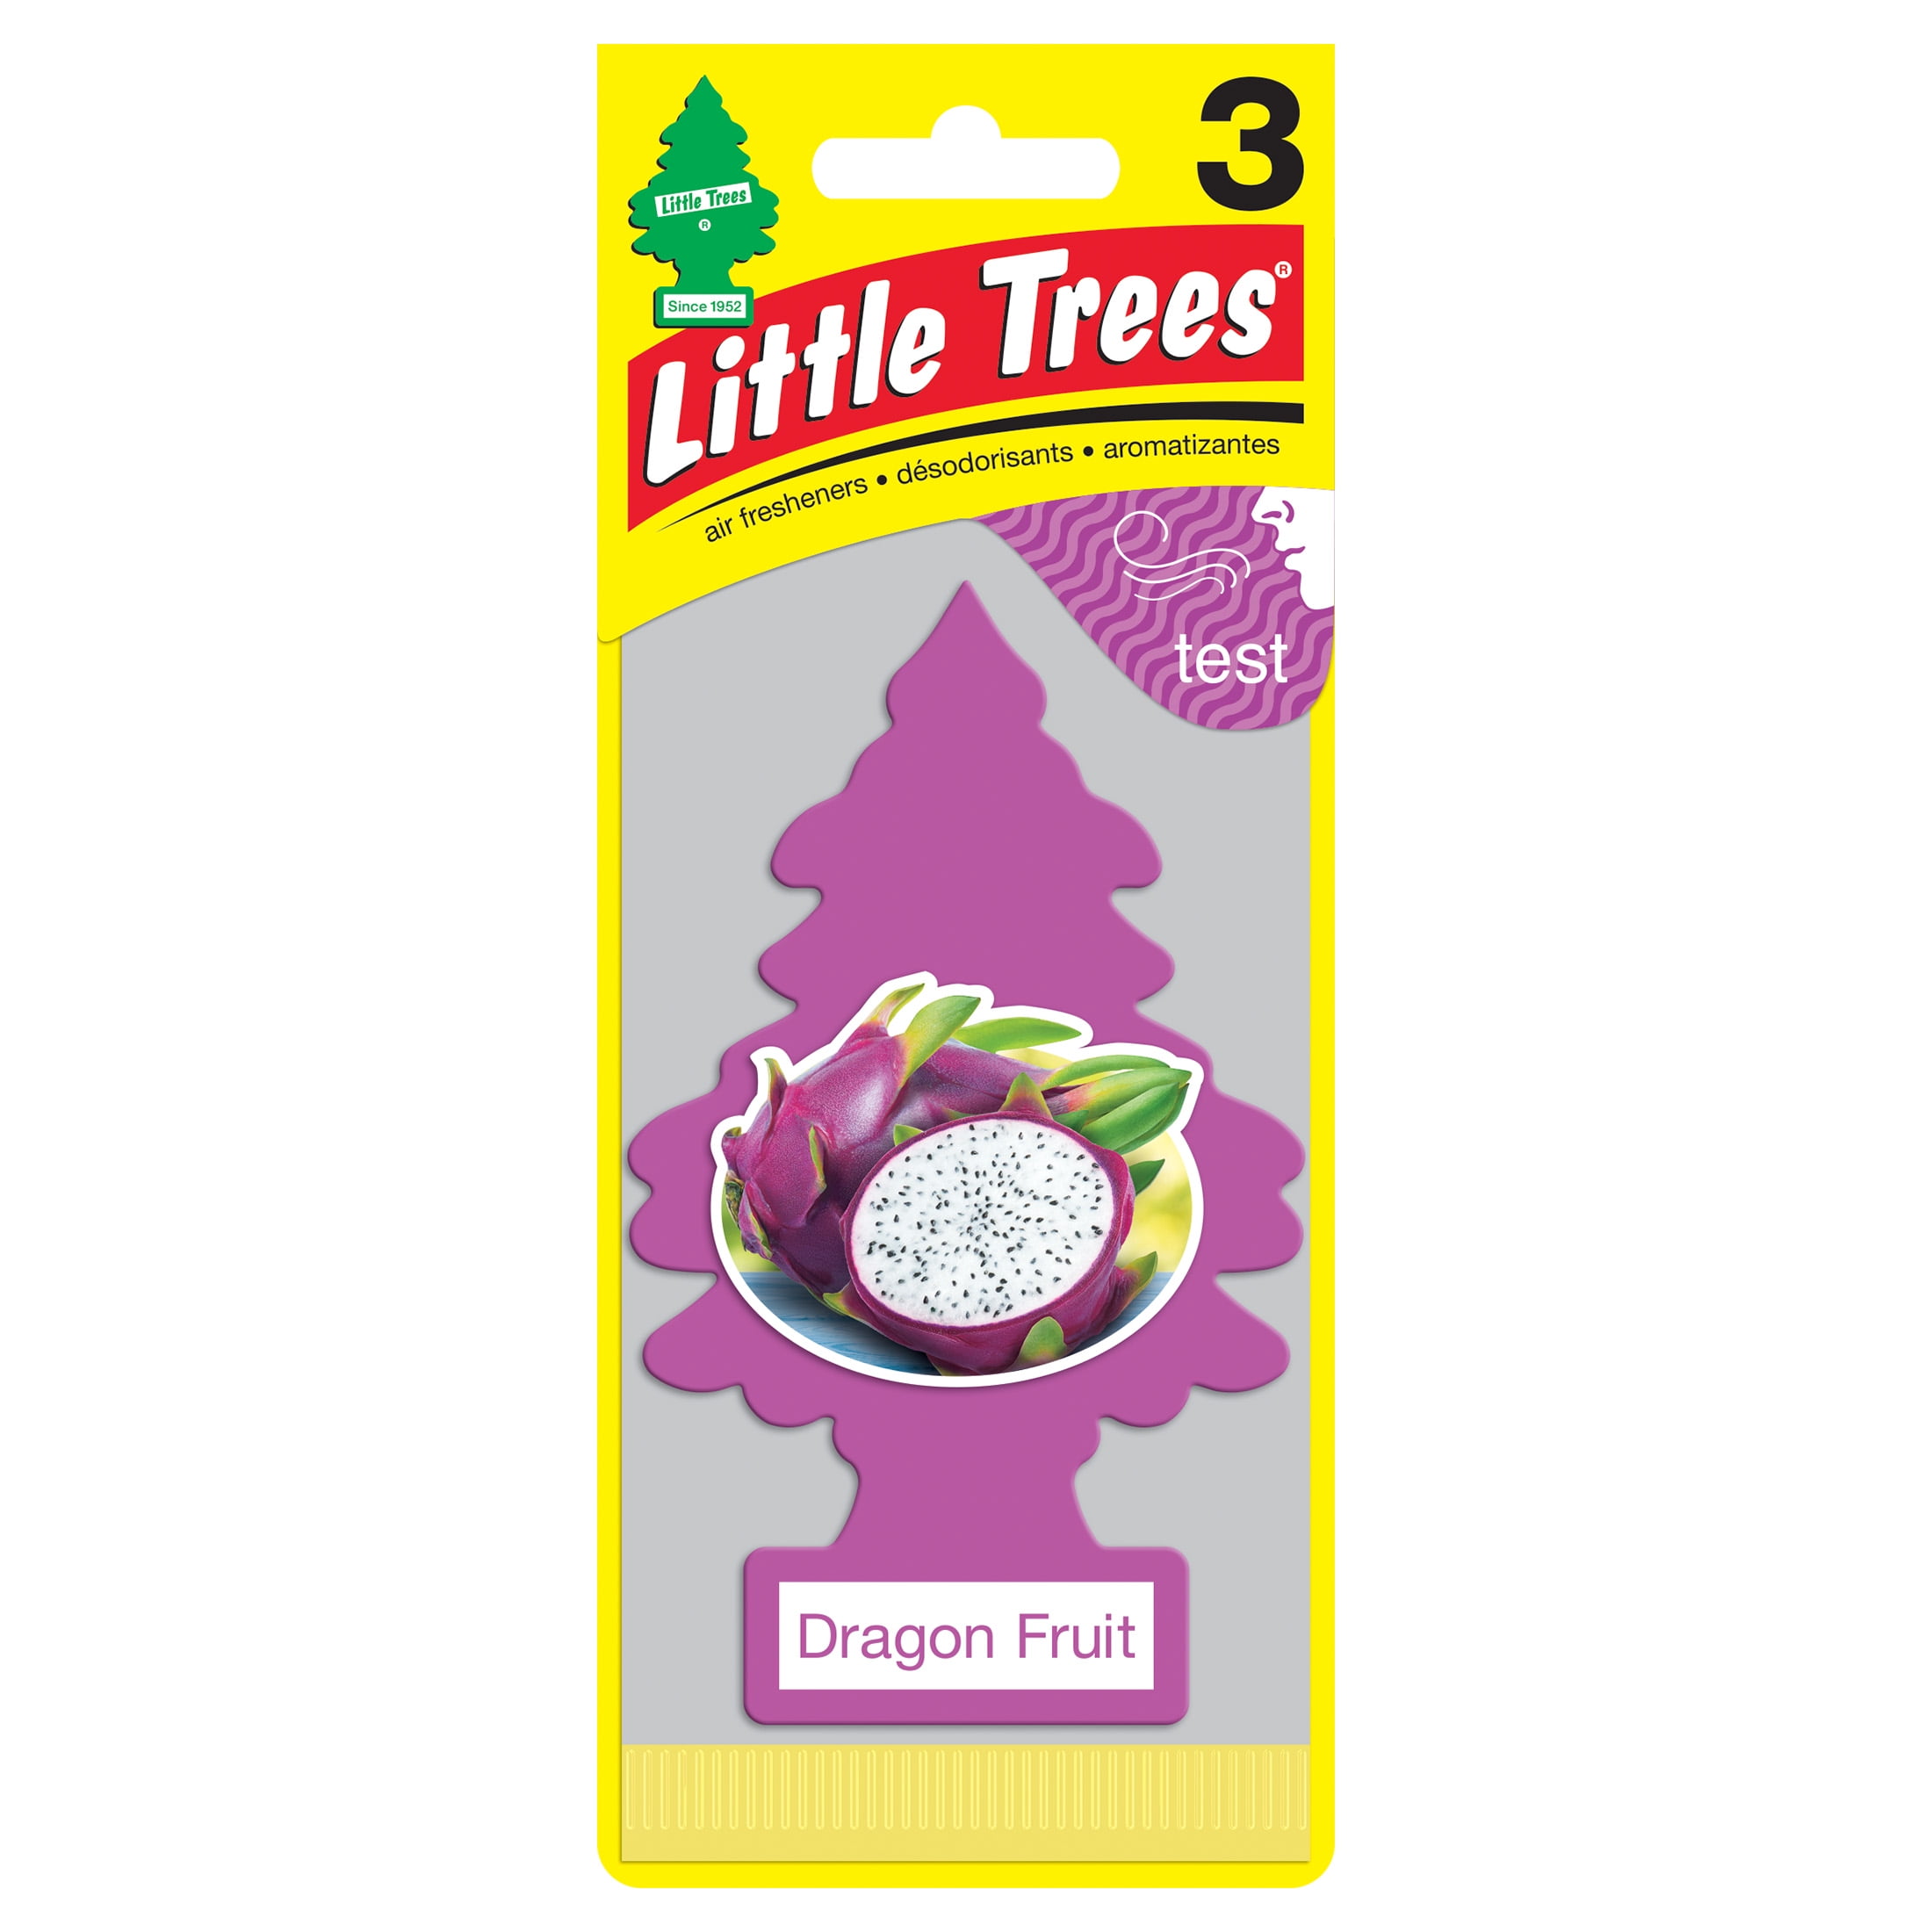 Little Trees Air Freshener Dragon Fruit Fragrance 3-Pack